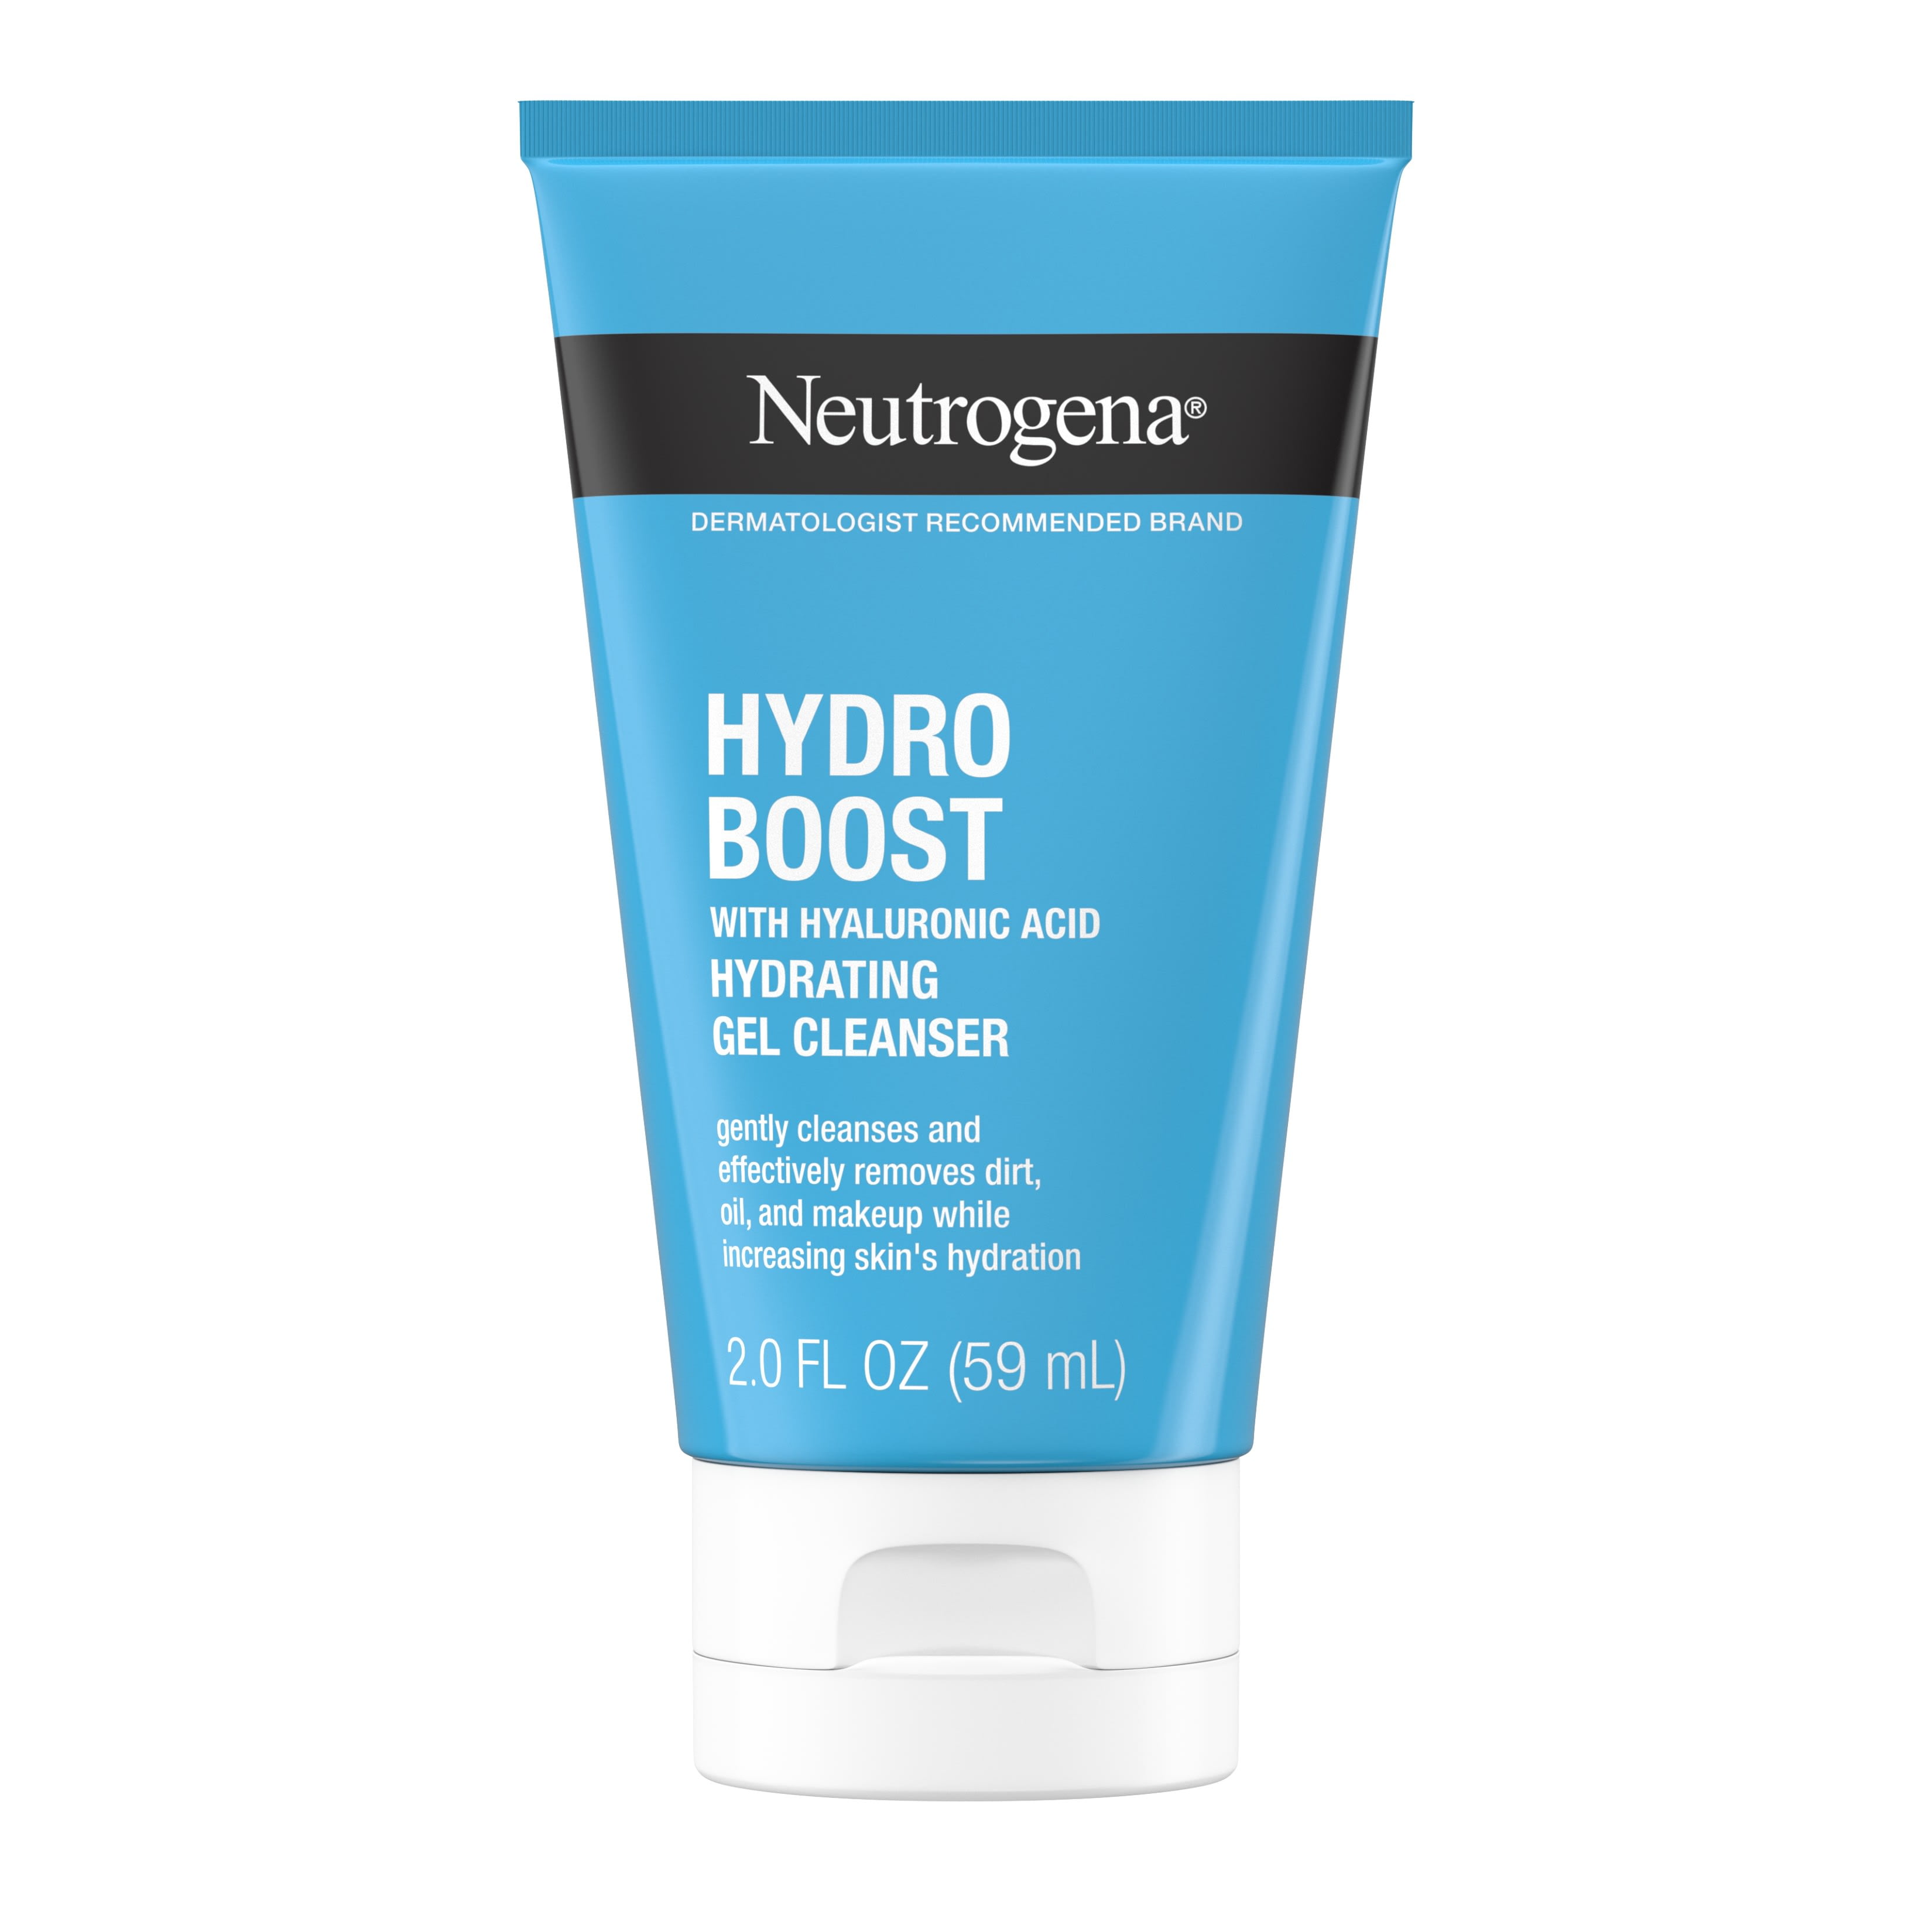 Neutrogena Hydro Boost Hyaluronic Acid Facial Cleansing Gel, 2 fl. oz